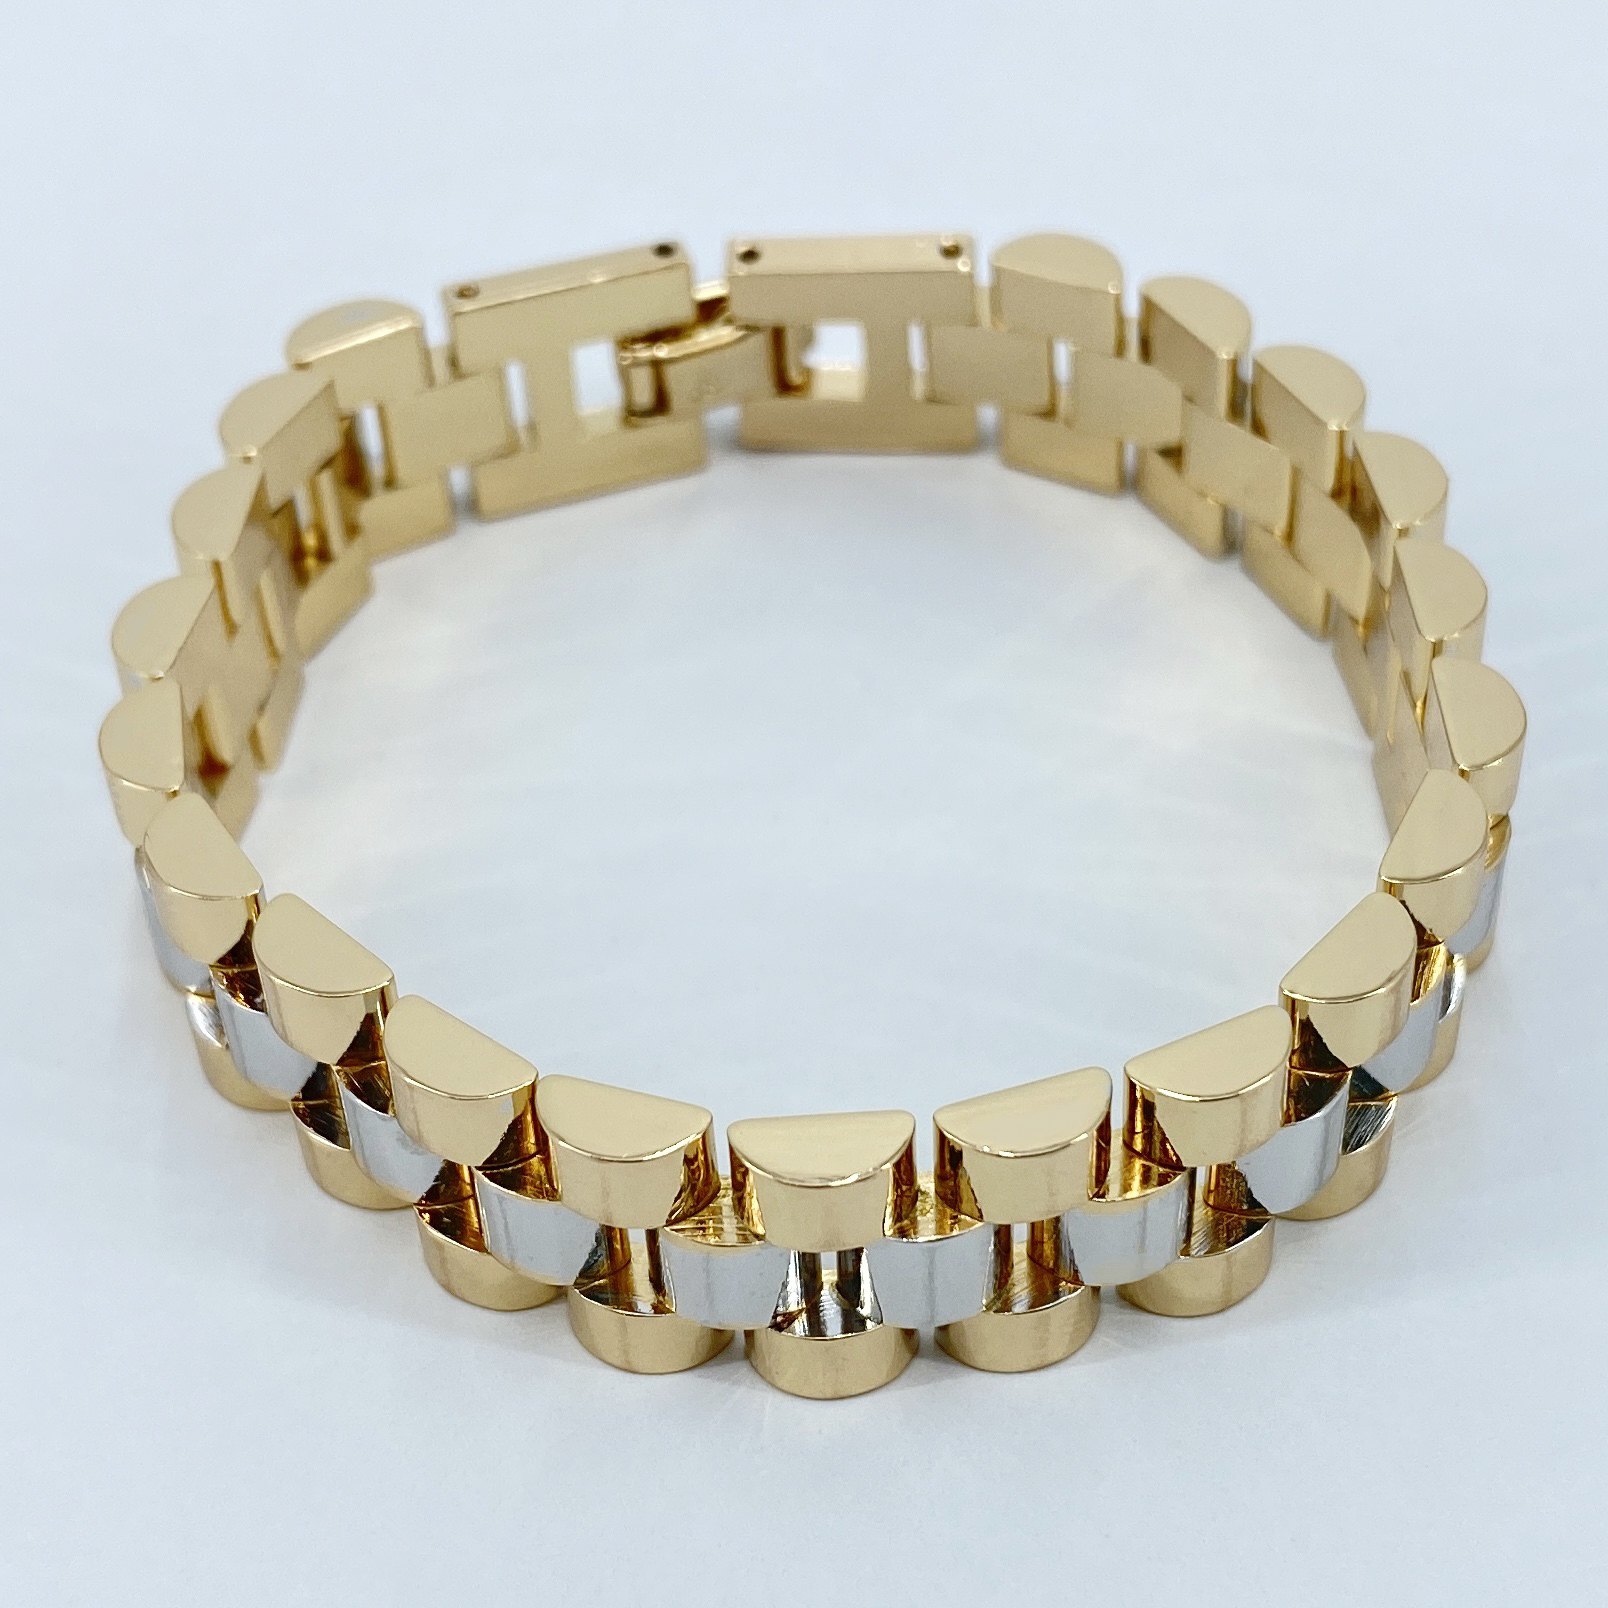 دستبند زنانه ژوپینگ کد B3016 -  - 1